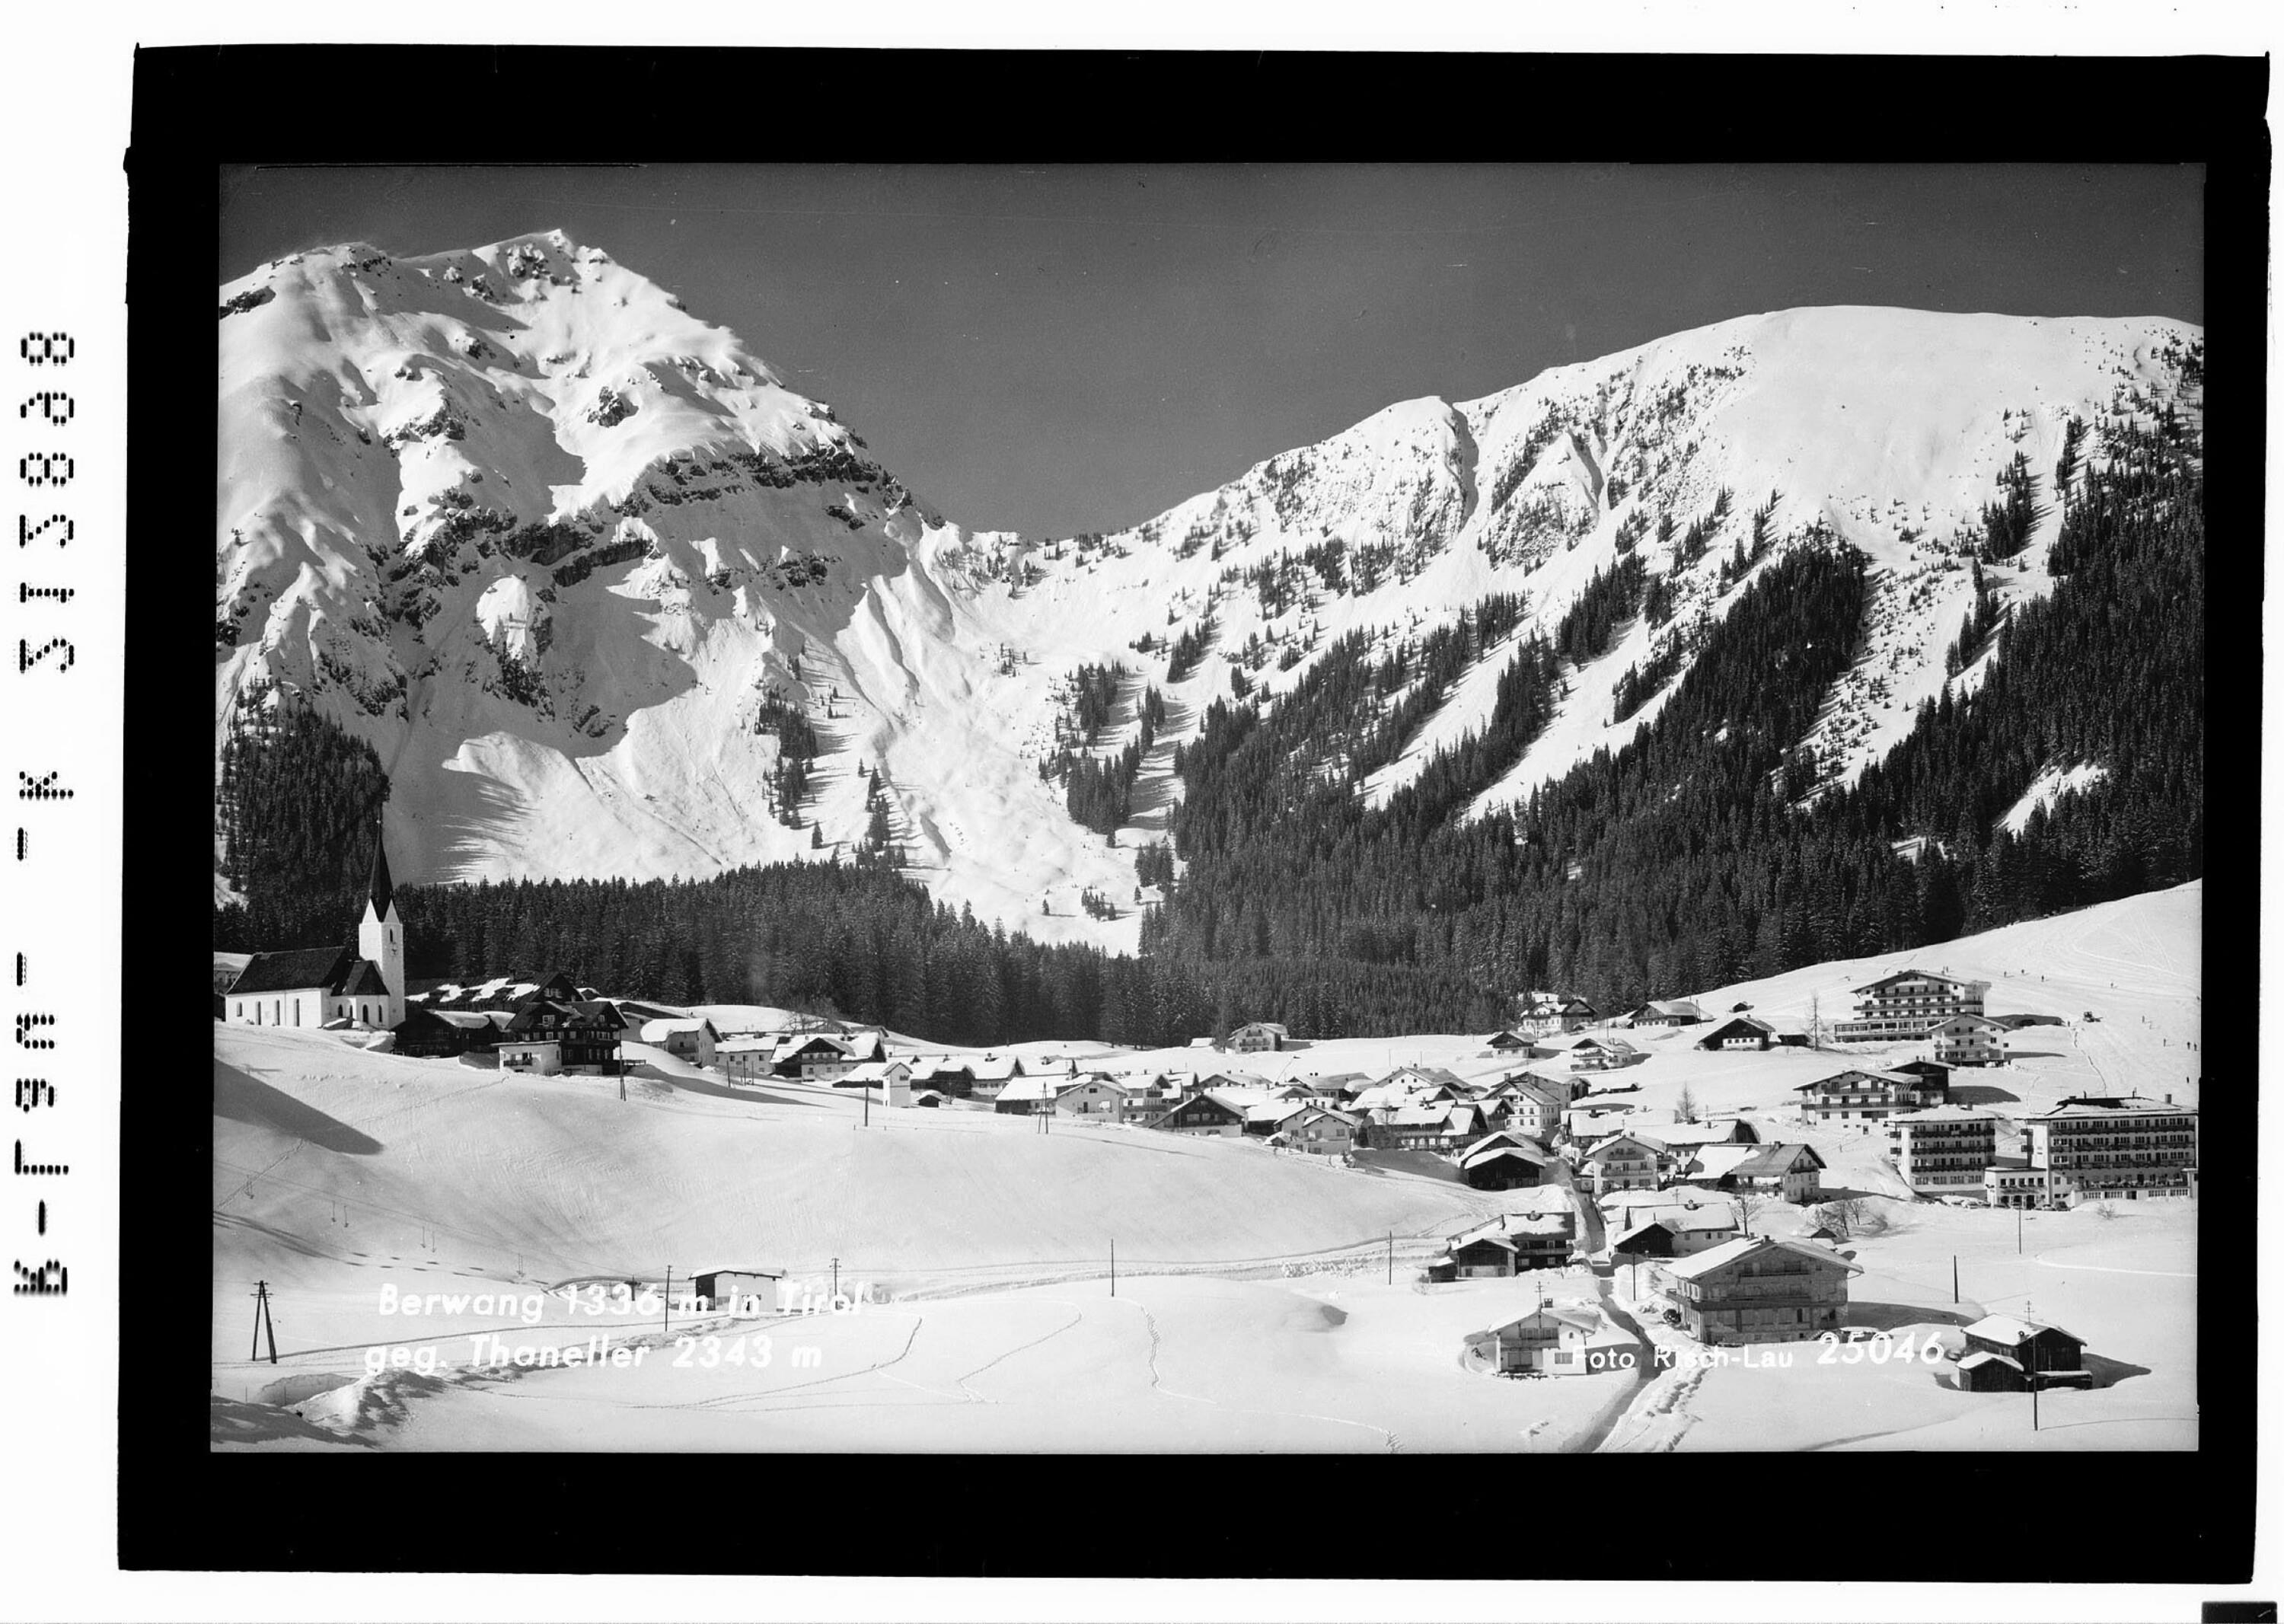 Berwang 1336 m in Tirol gegen Thaneller 2343 m></div>


    <hr>
    <div class=